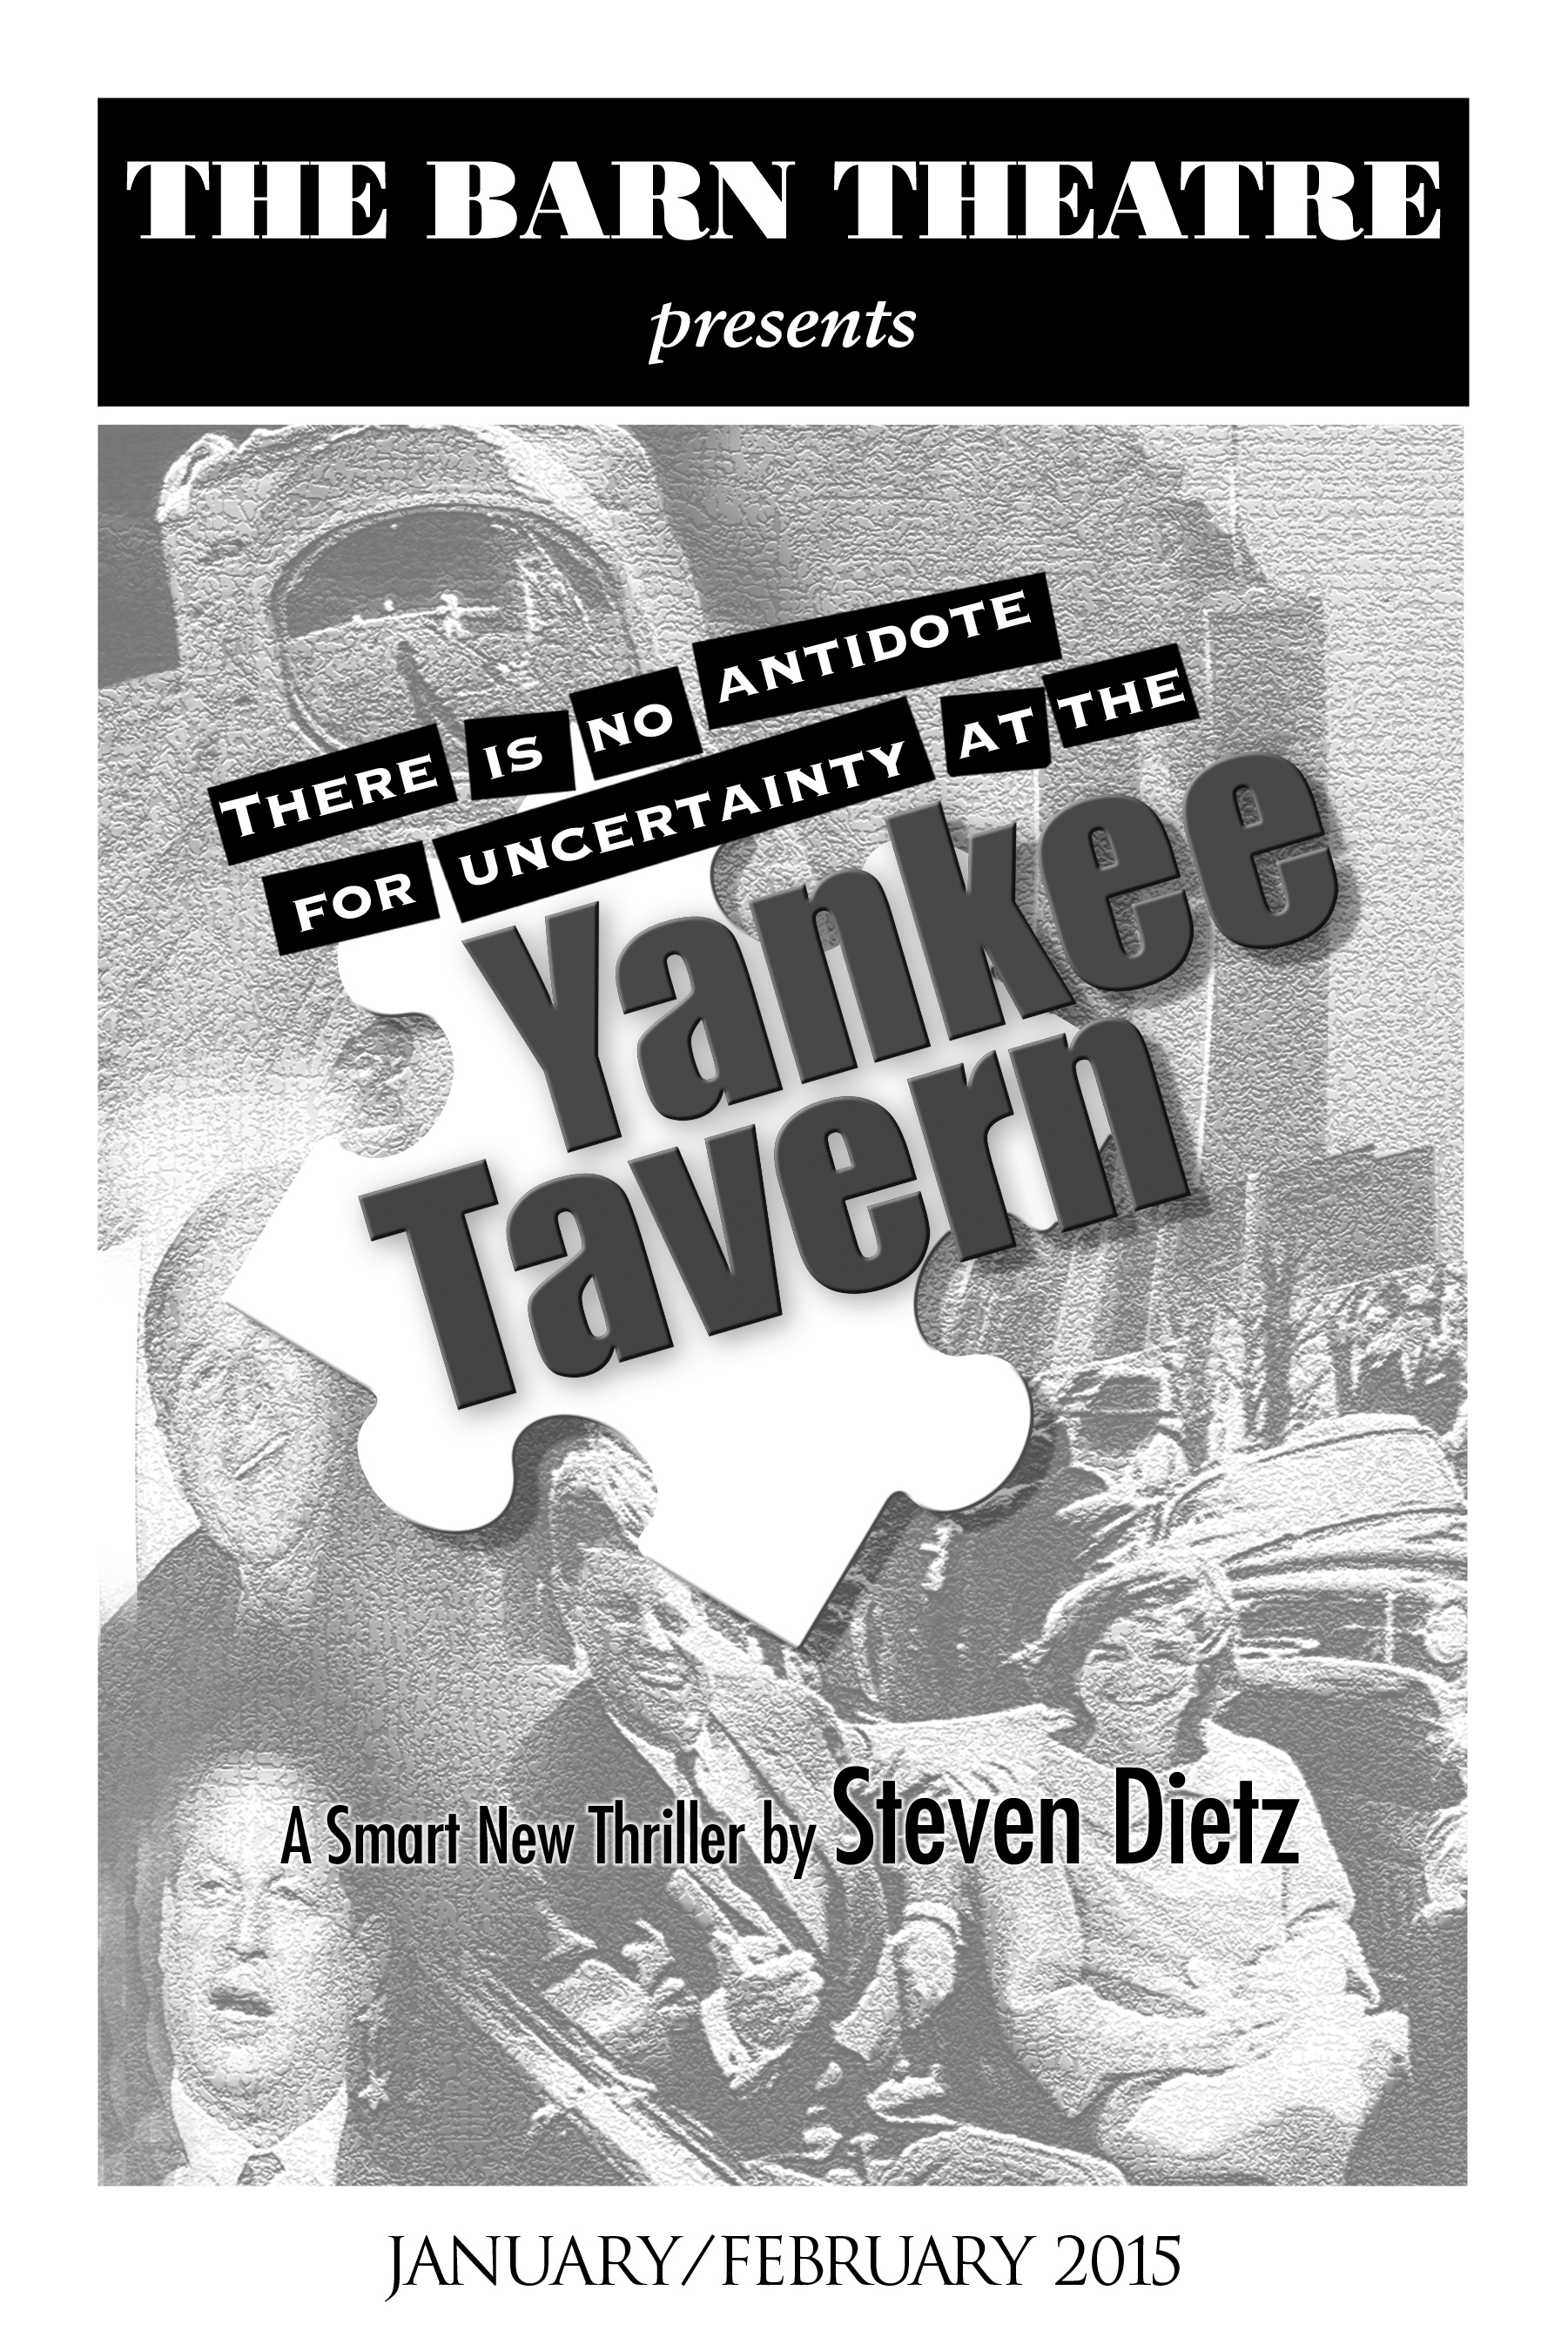 Program Cover for Yankee Tavern